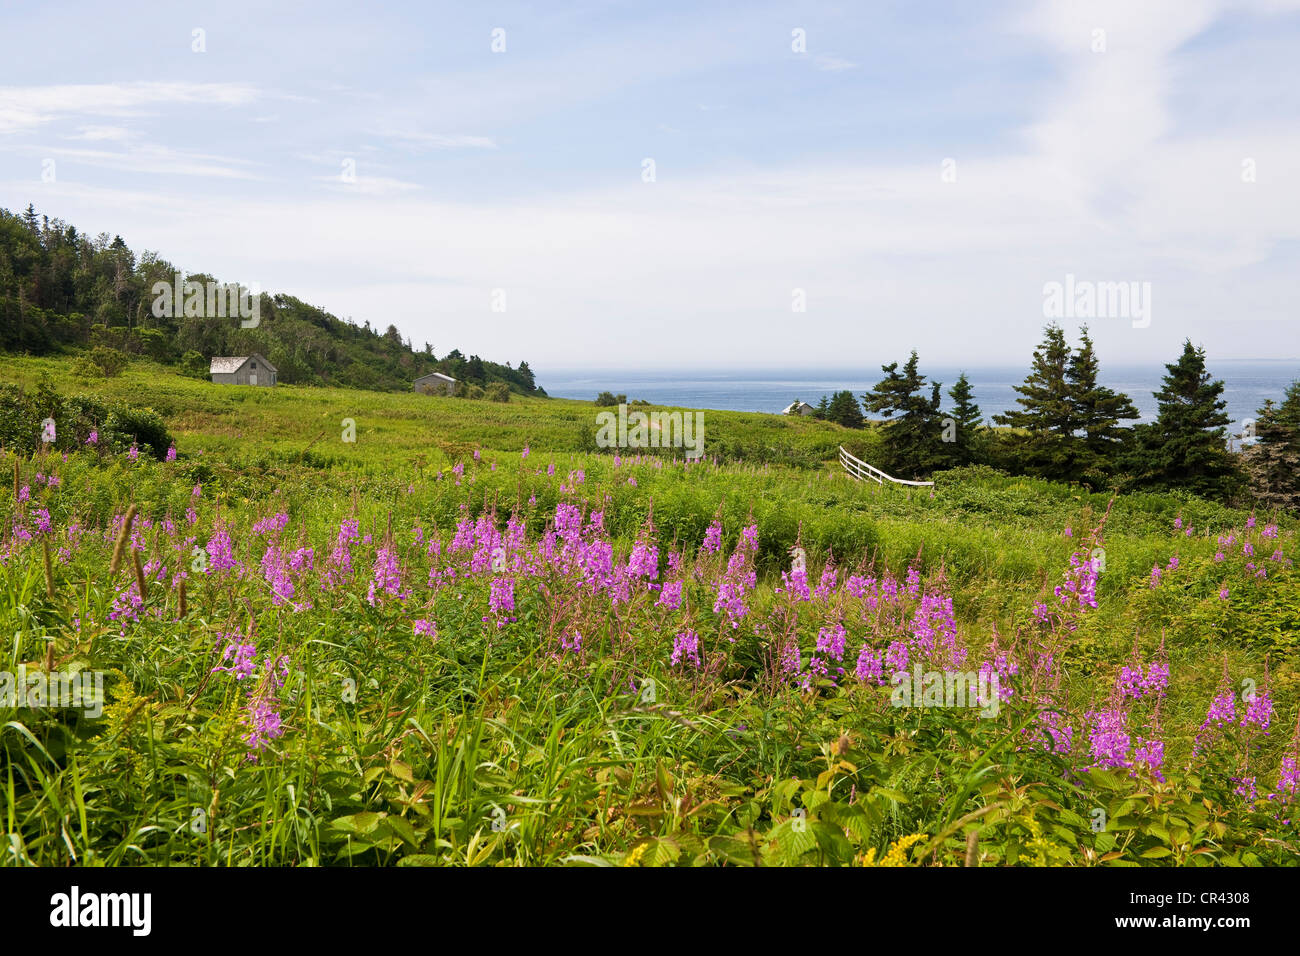 Canada, Quebec Province, Gaspesie, Ile Bonaventure (Bonaventure Island) Stock Photo